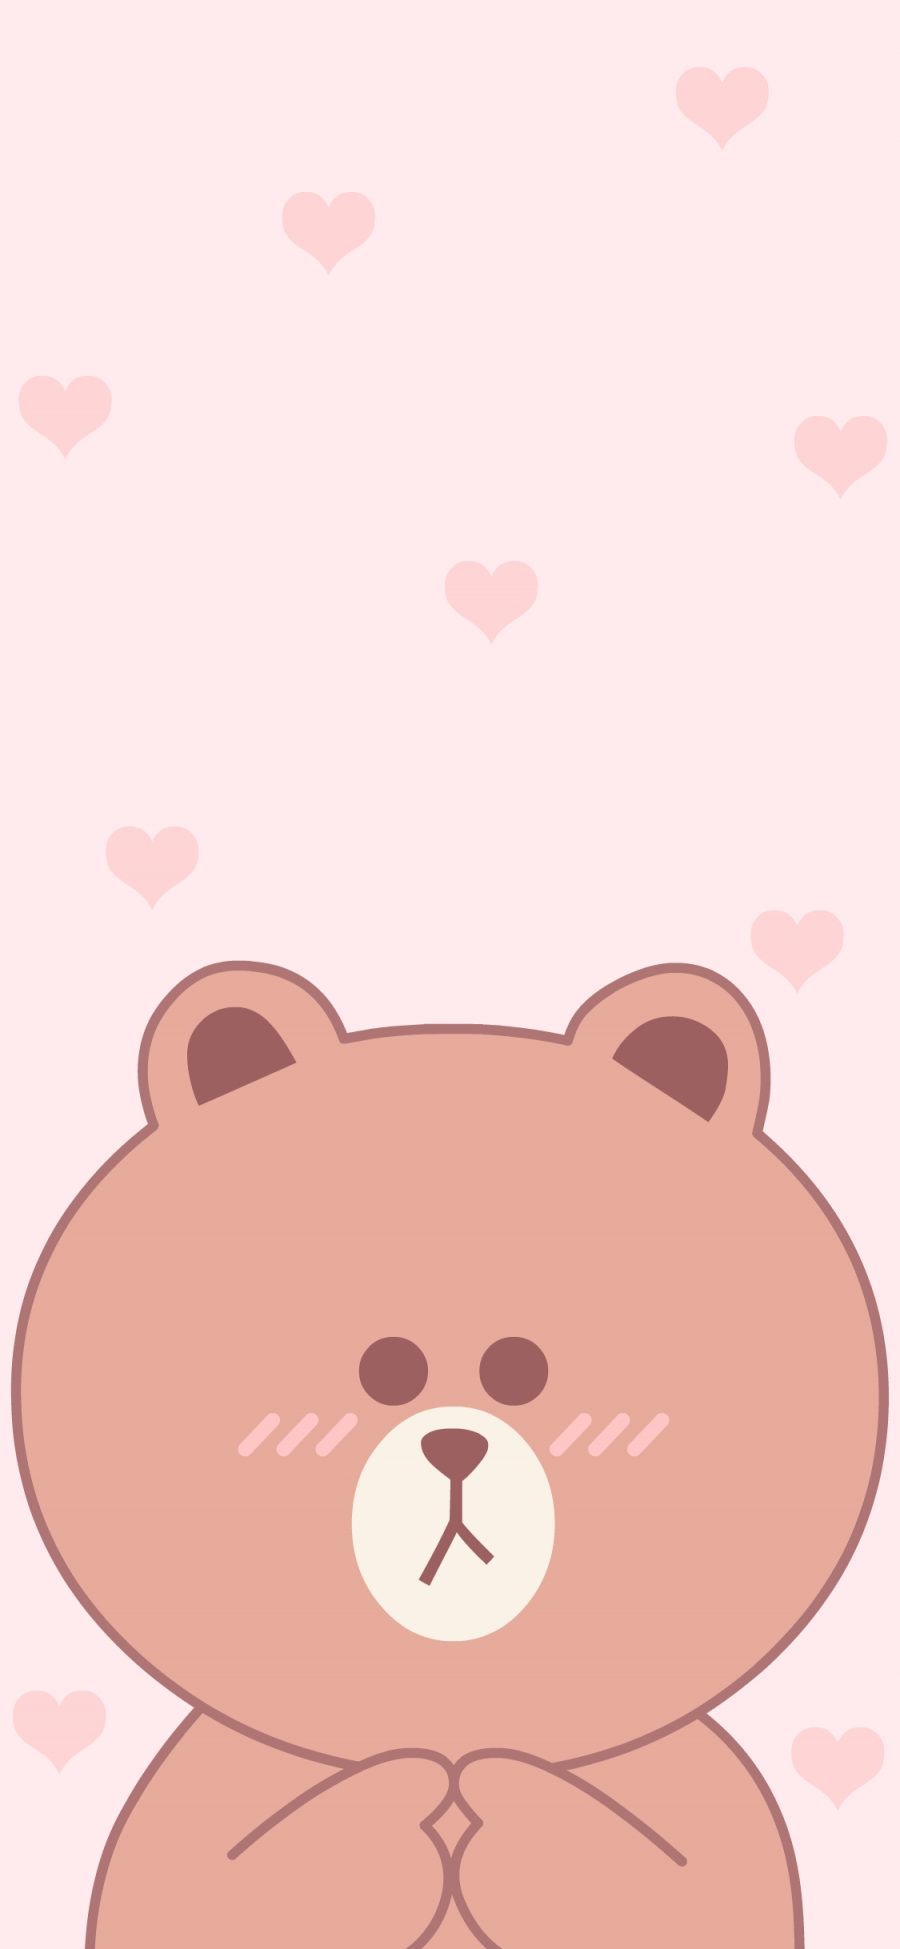 [2436×1125]布朗熊 爱心 line friends 粉色 苹果手机动漫壁纸图片